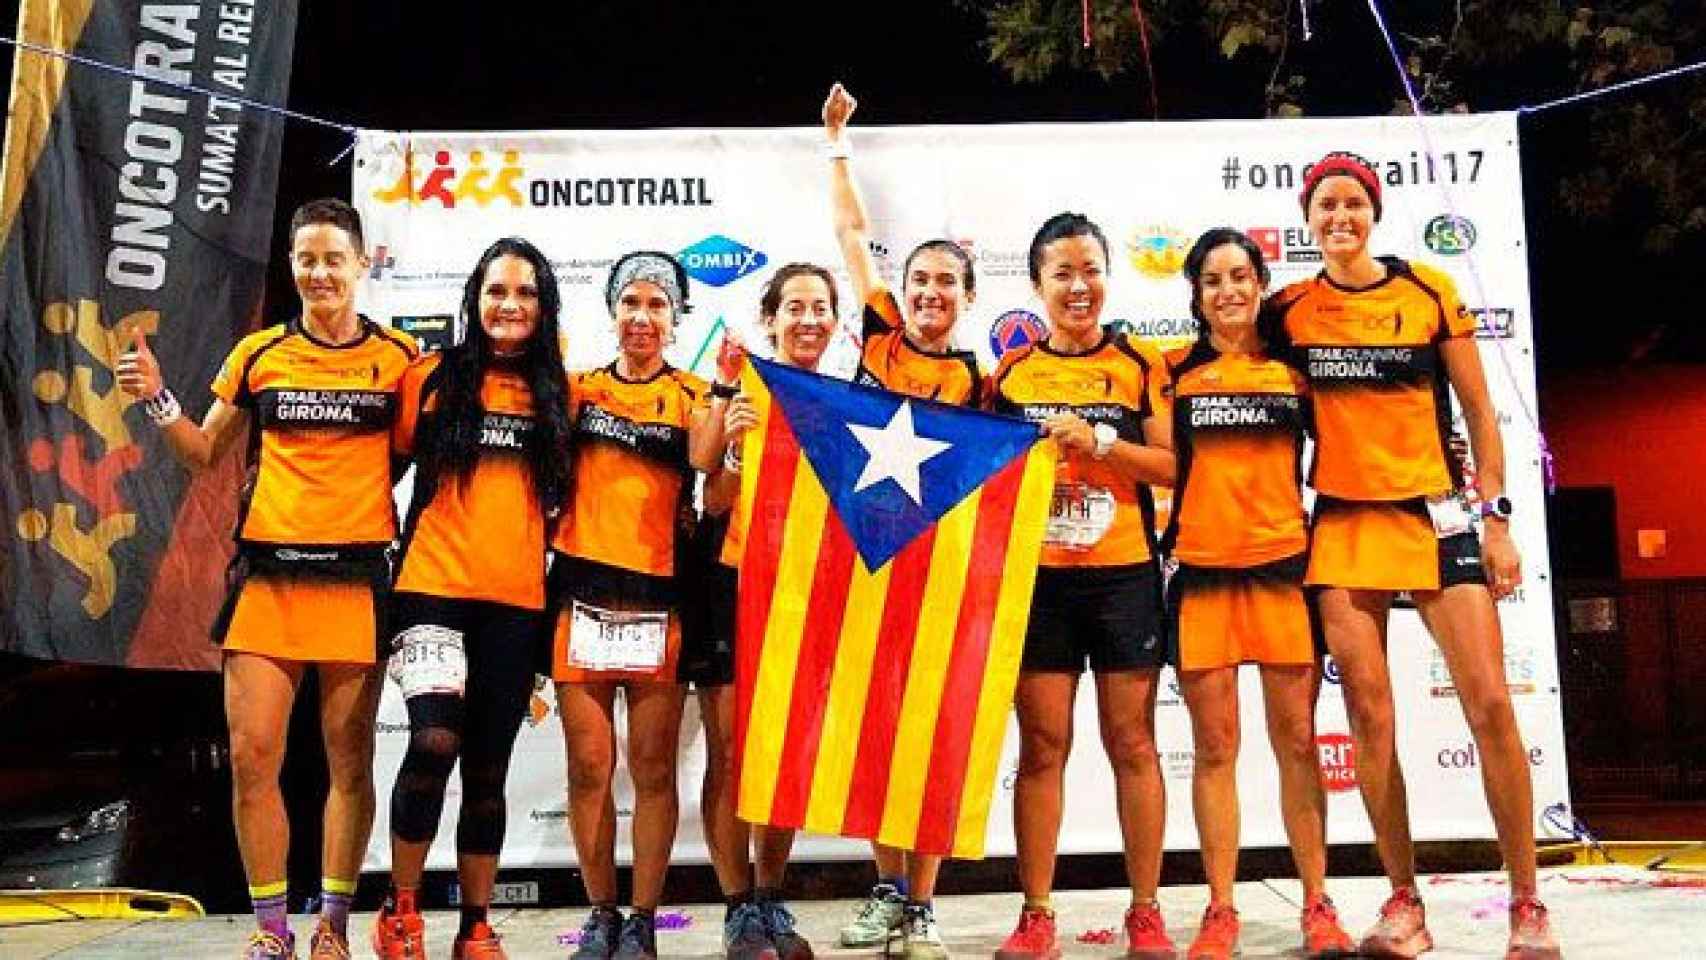 El equipo de Club Trail Girona, con una estelada en la carrera contra el cáncer Oncotrail 2017 / CG